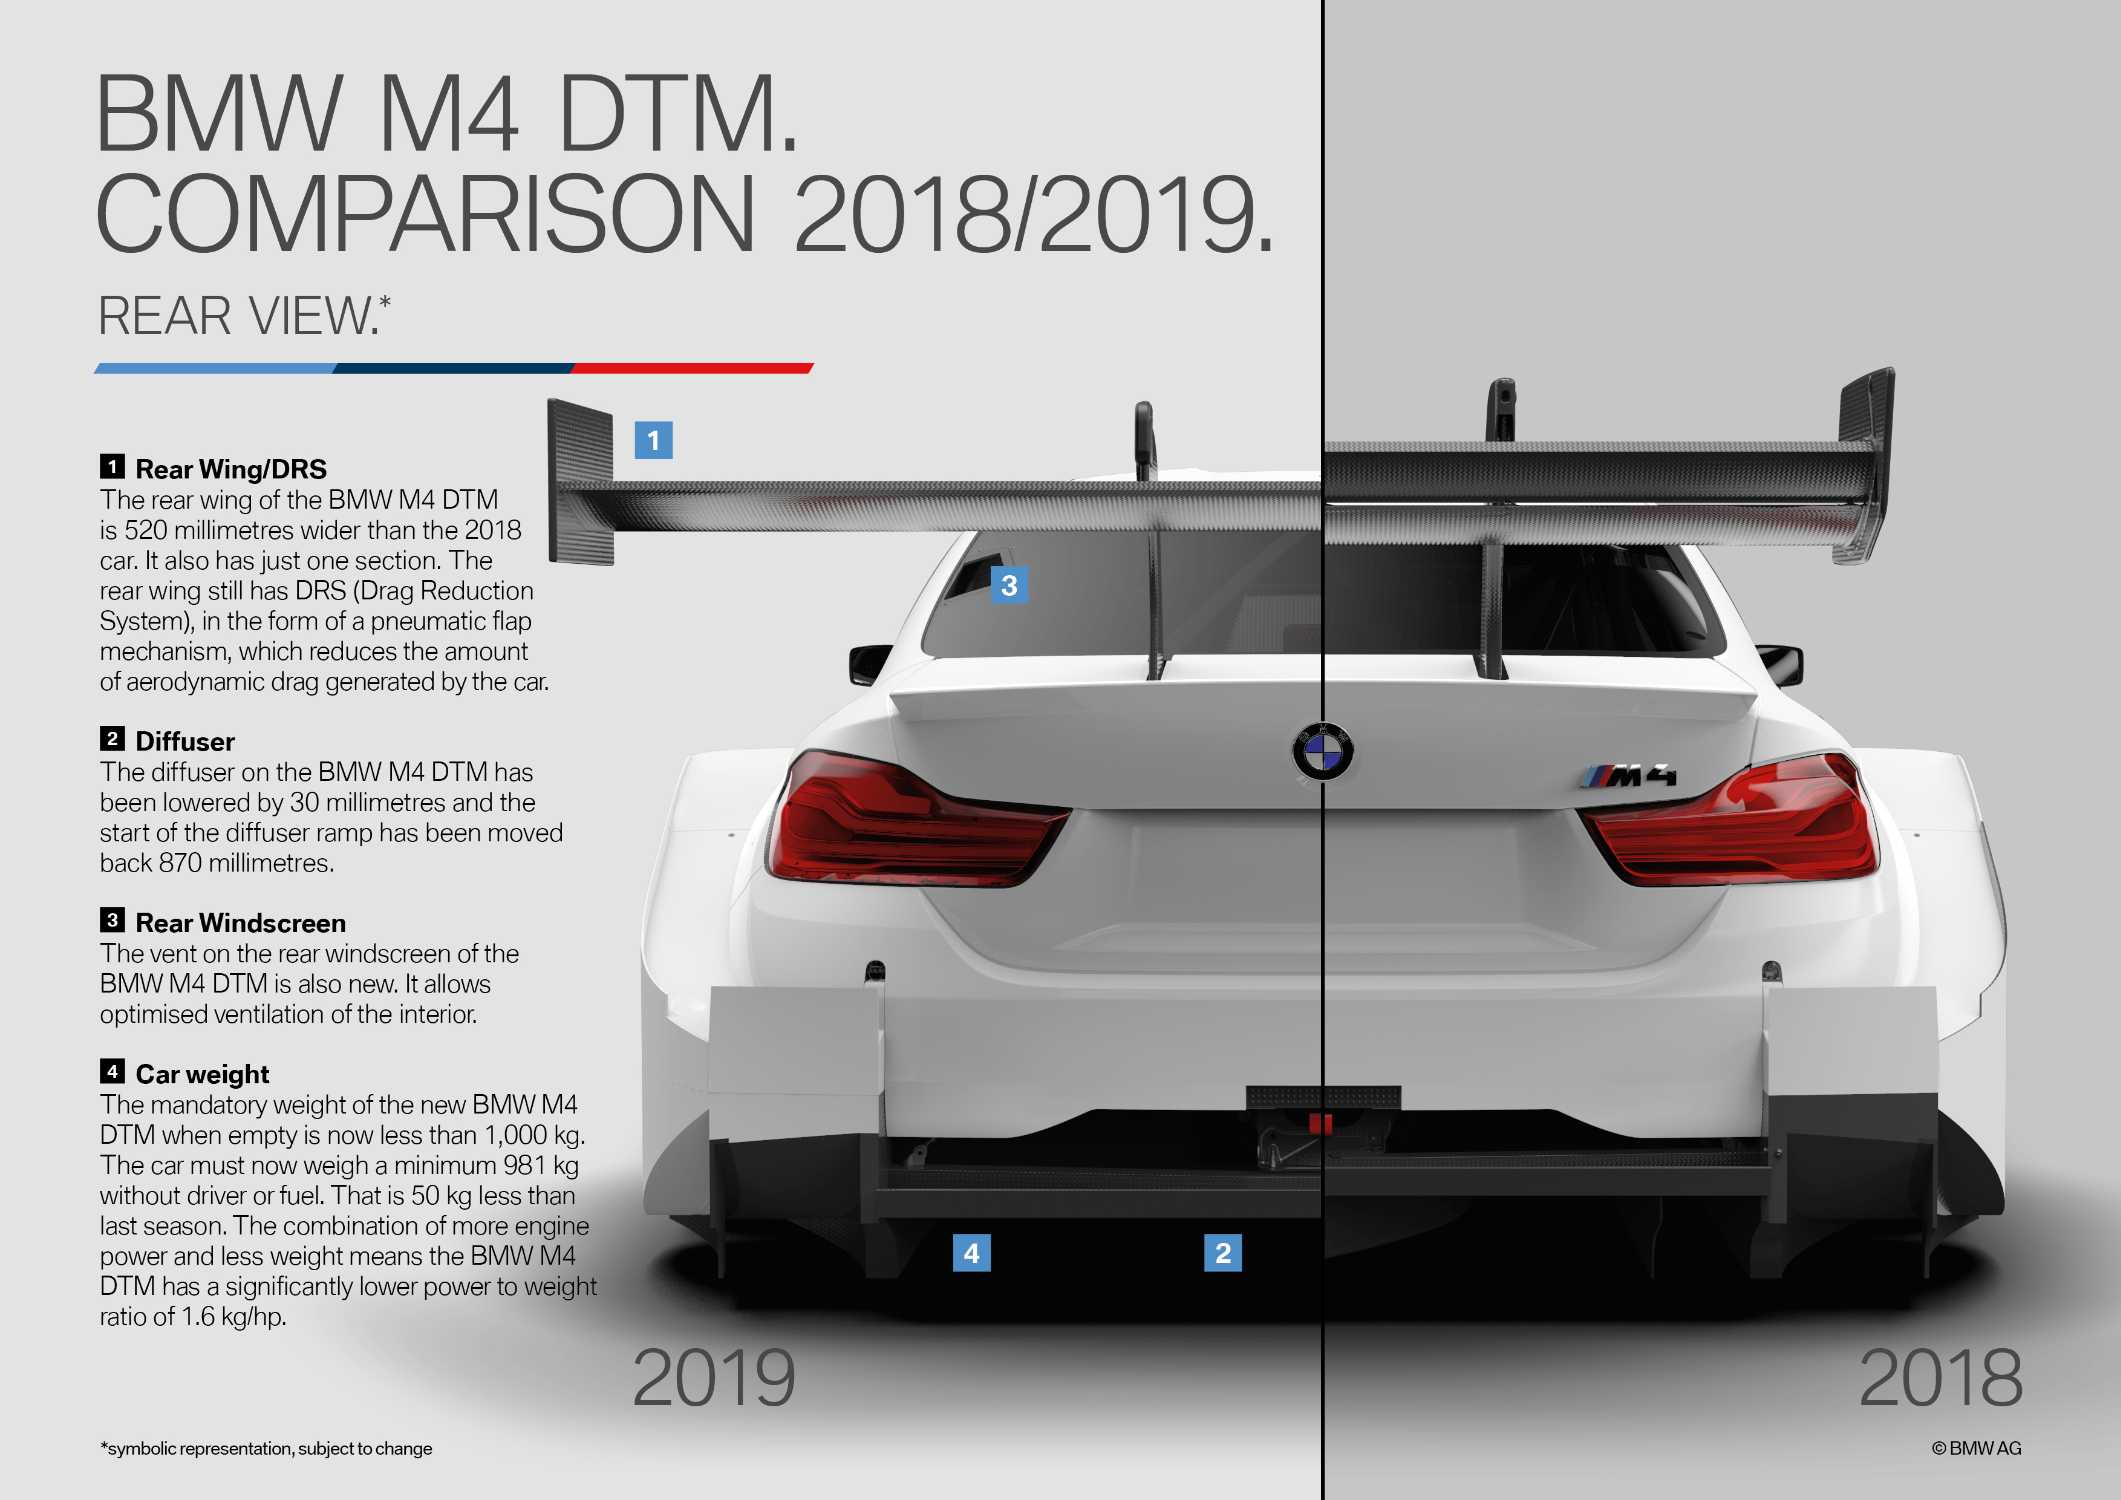 BMW M4 DTM, Comparison 2018/2019.